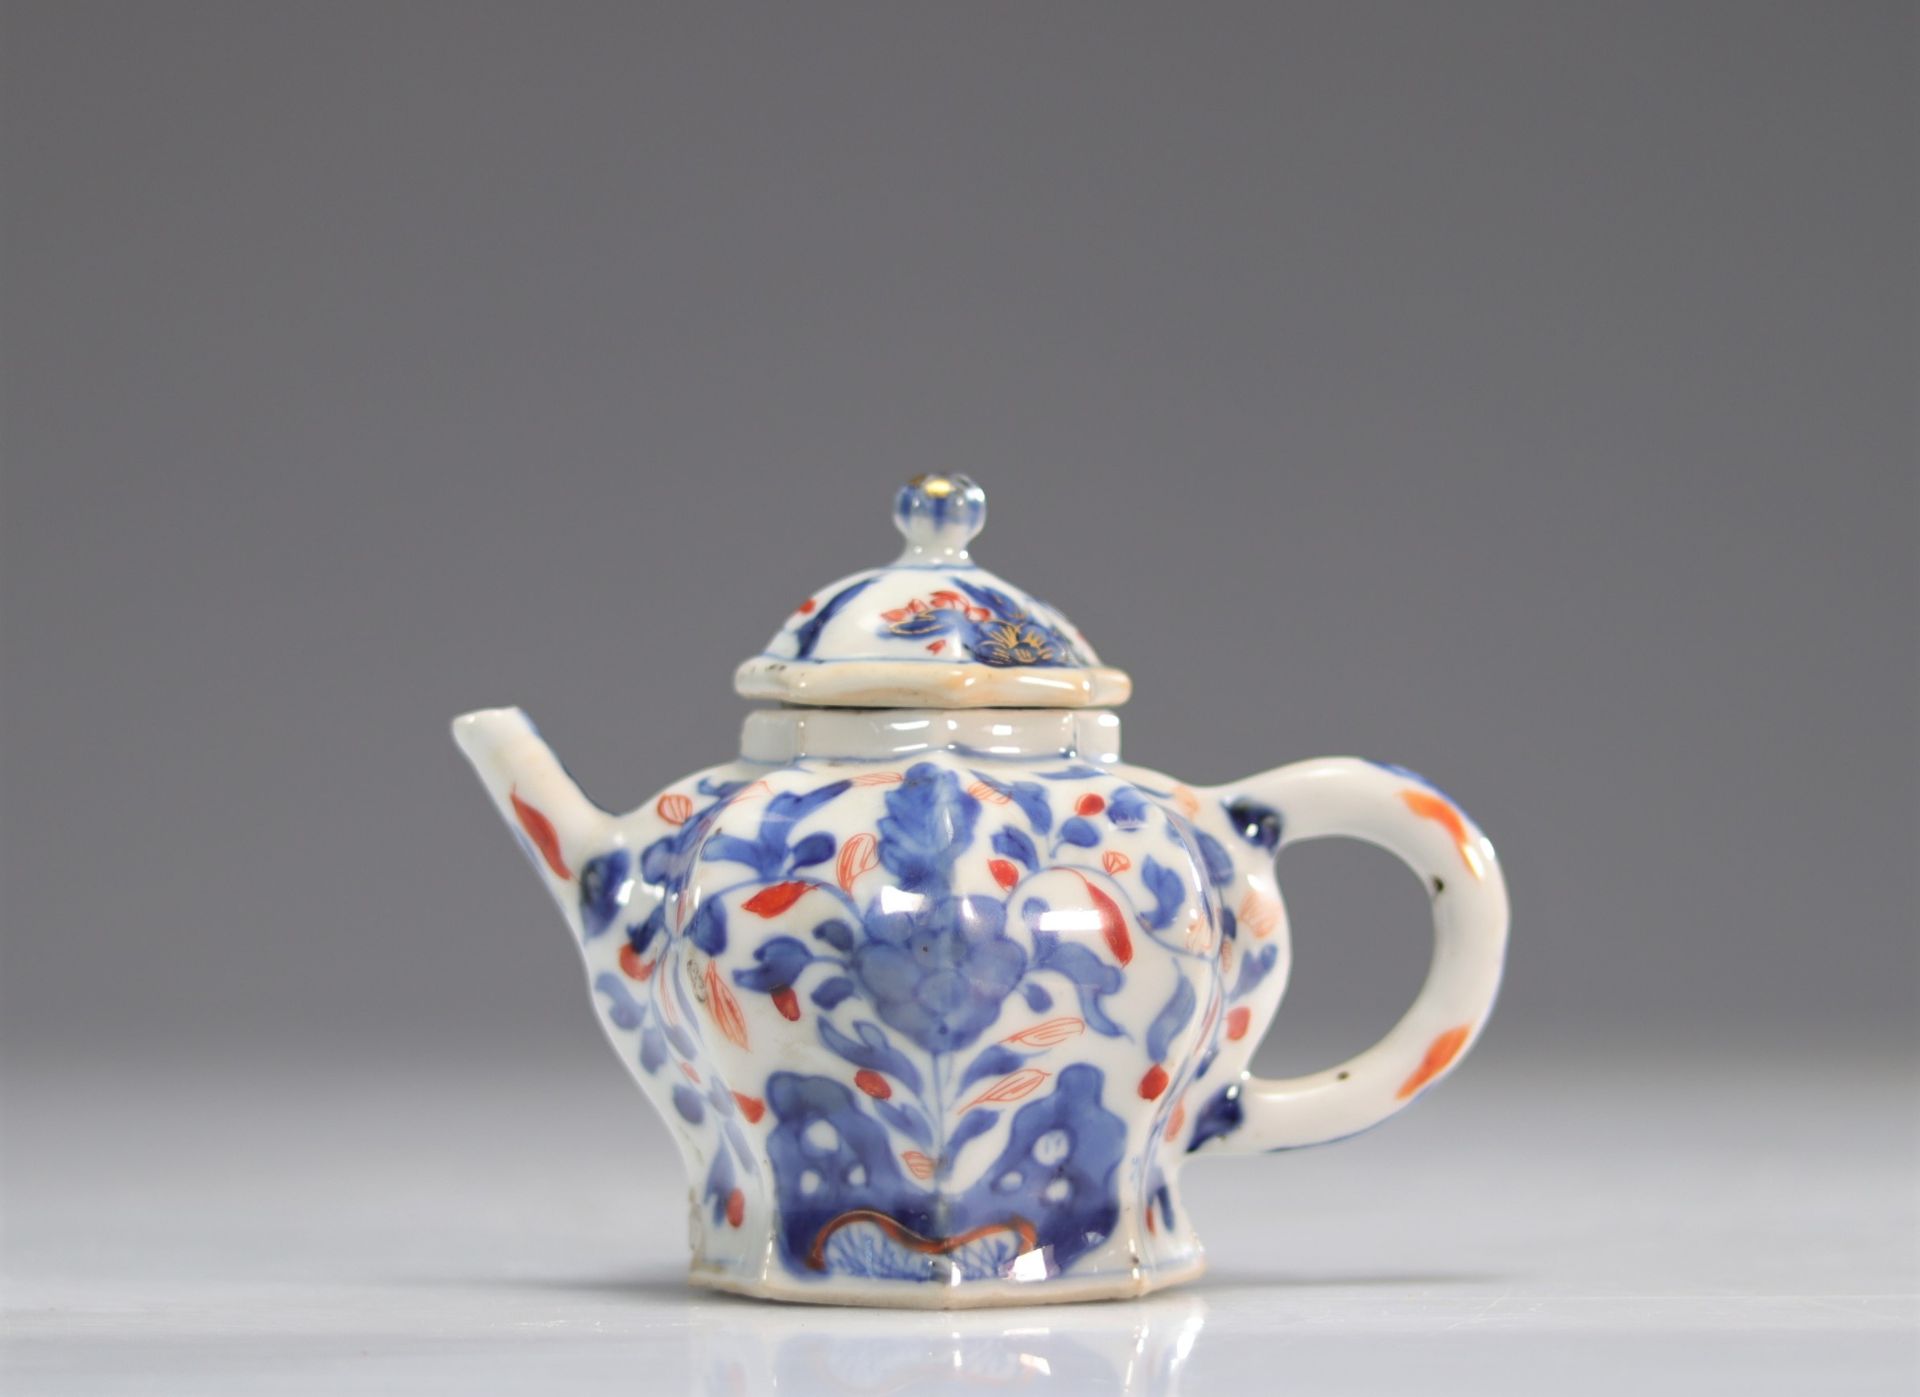 Kangxi period teapot - imari export - China - Image 2 of 5